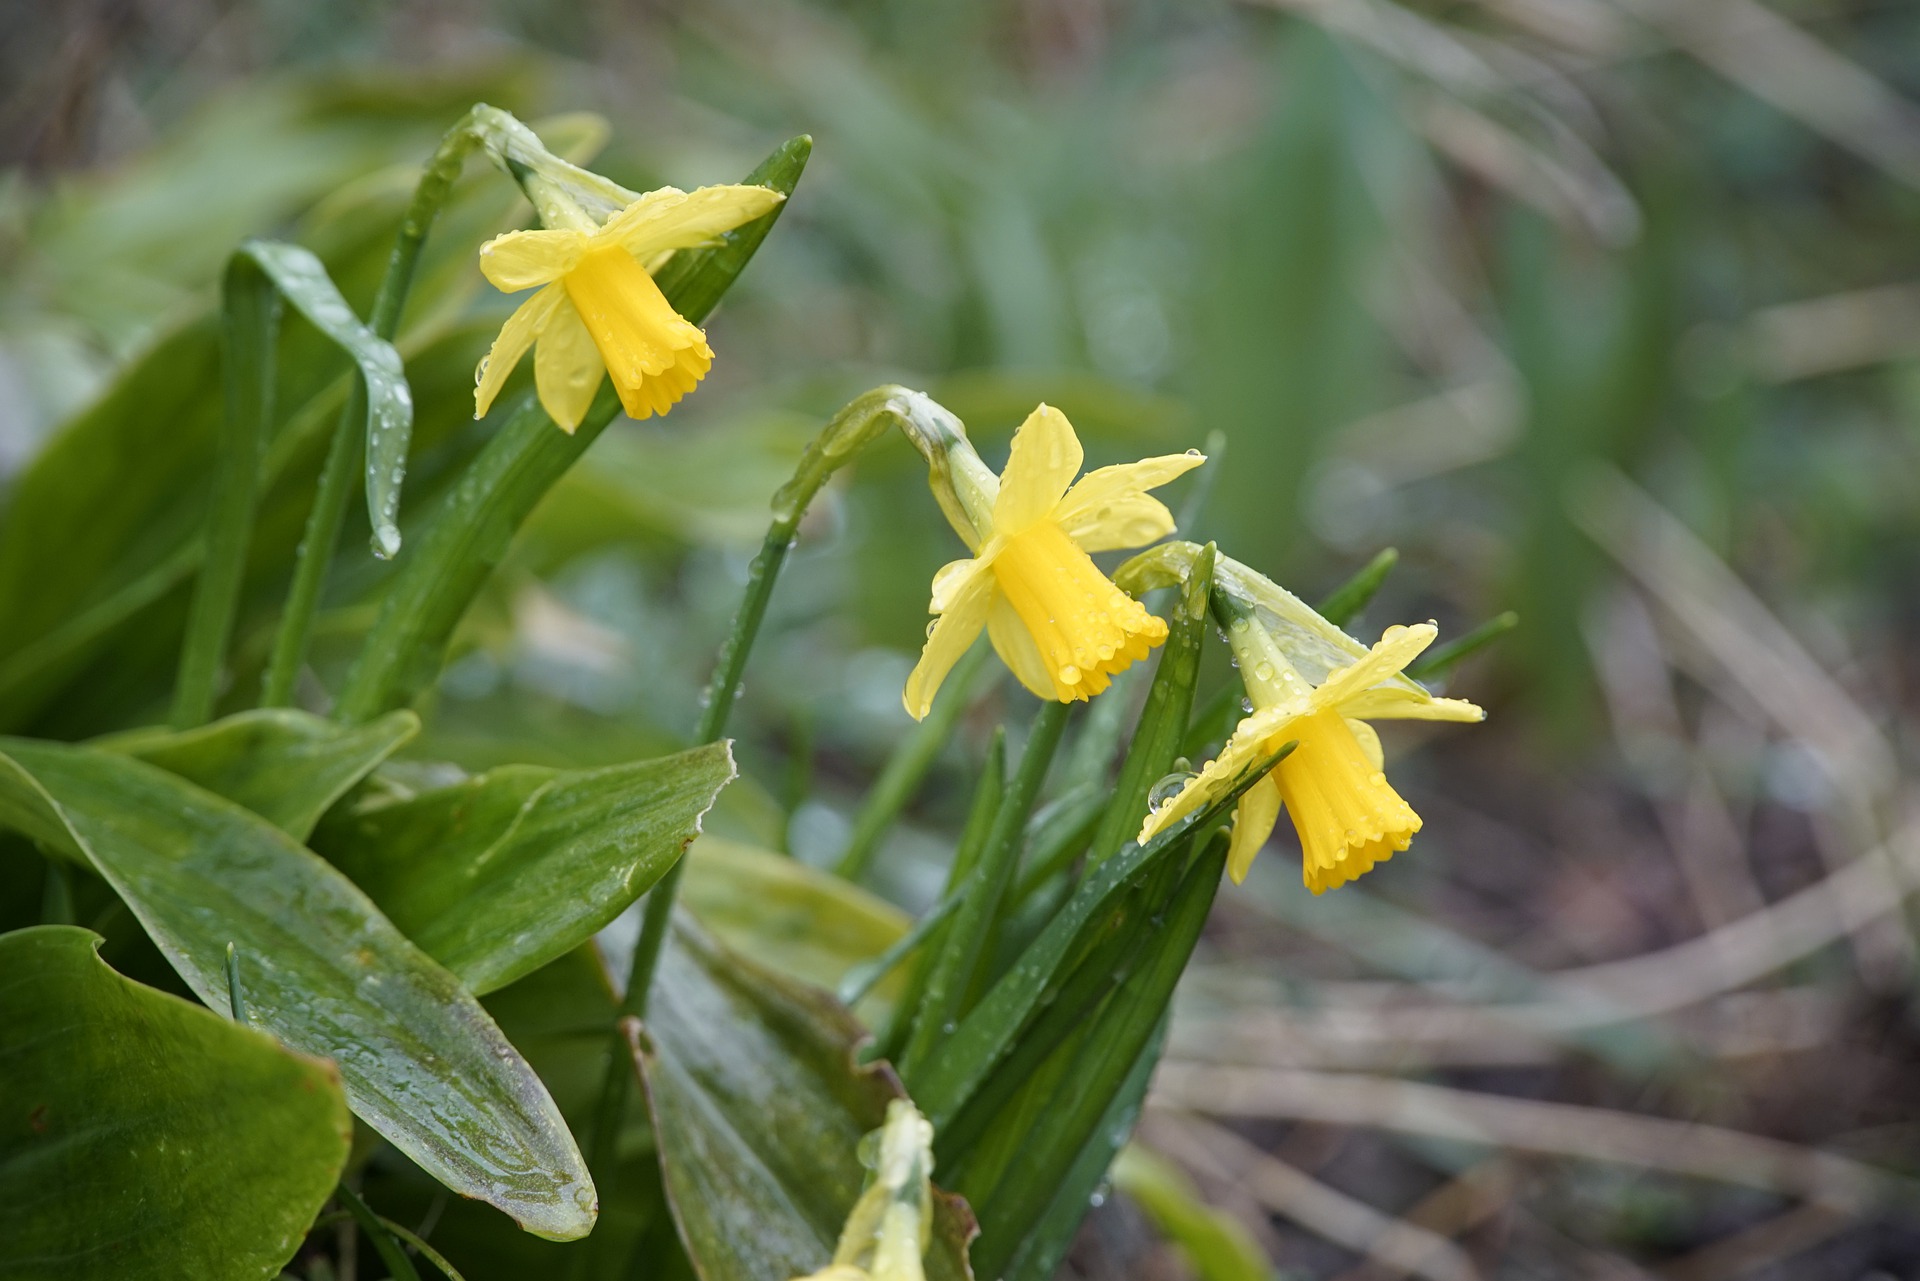 Yellow daffodils in the rain.